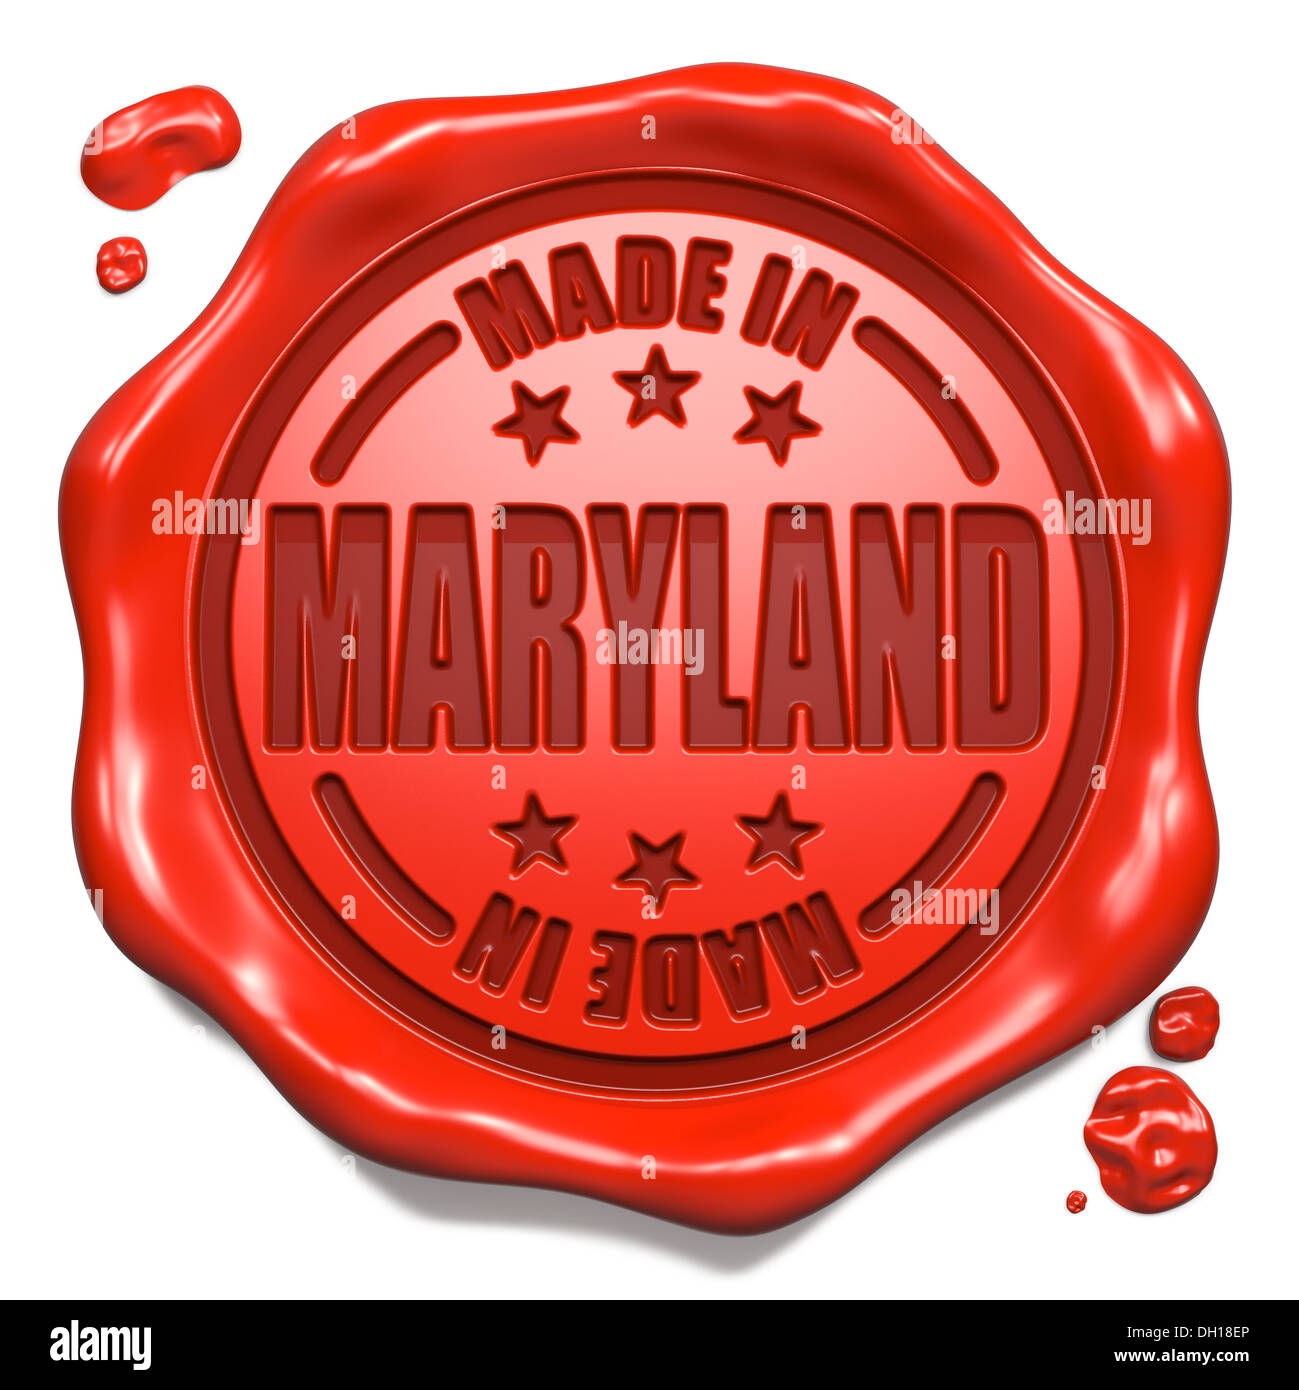 Pris dans le Maryland - Timbres sur le sceau de cire rouge. Banque D'Images